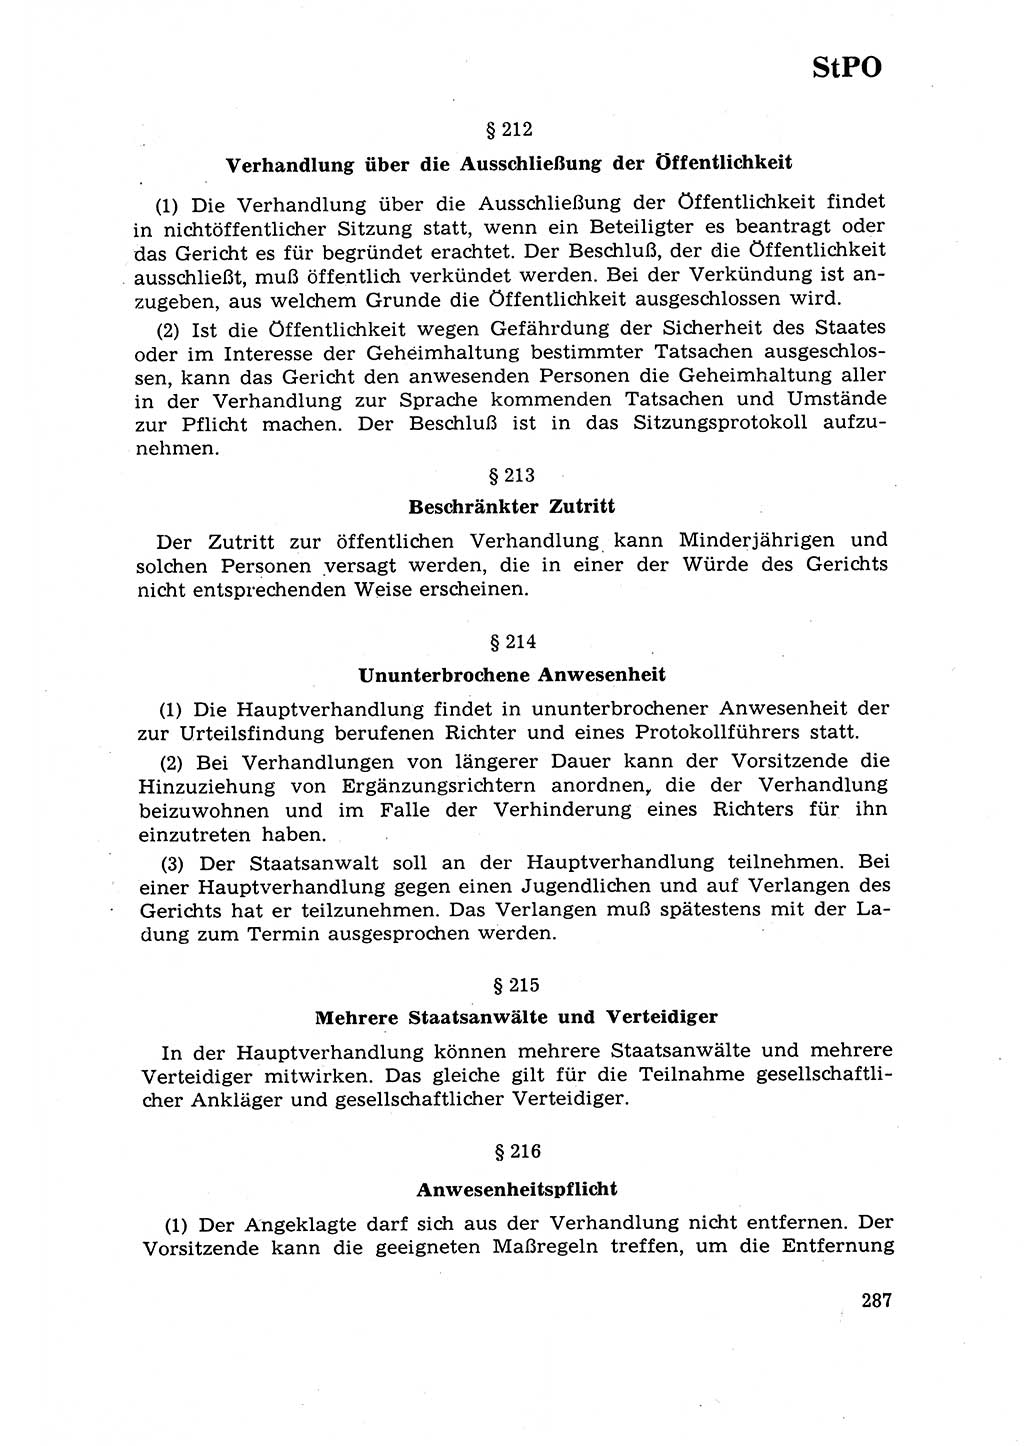 Strafrecht [Deutsche Demokratische Republik (DDR)] 1968, Seite 287 (Strafr. DDR 1968, S. 287)